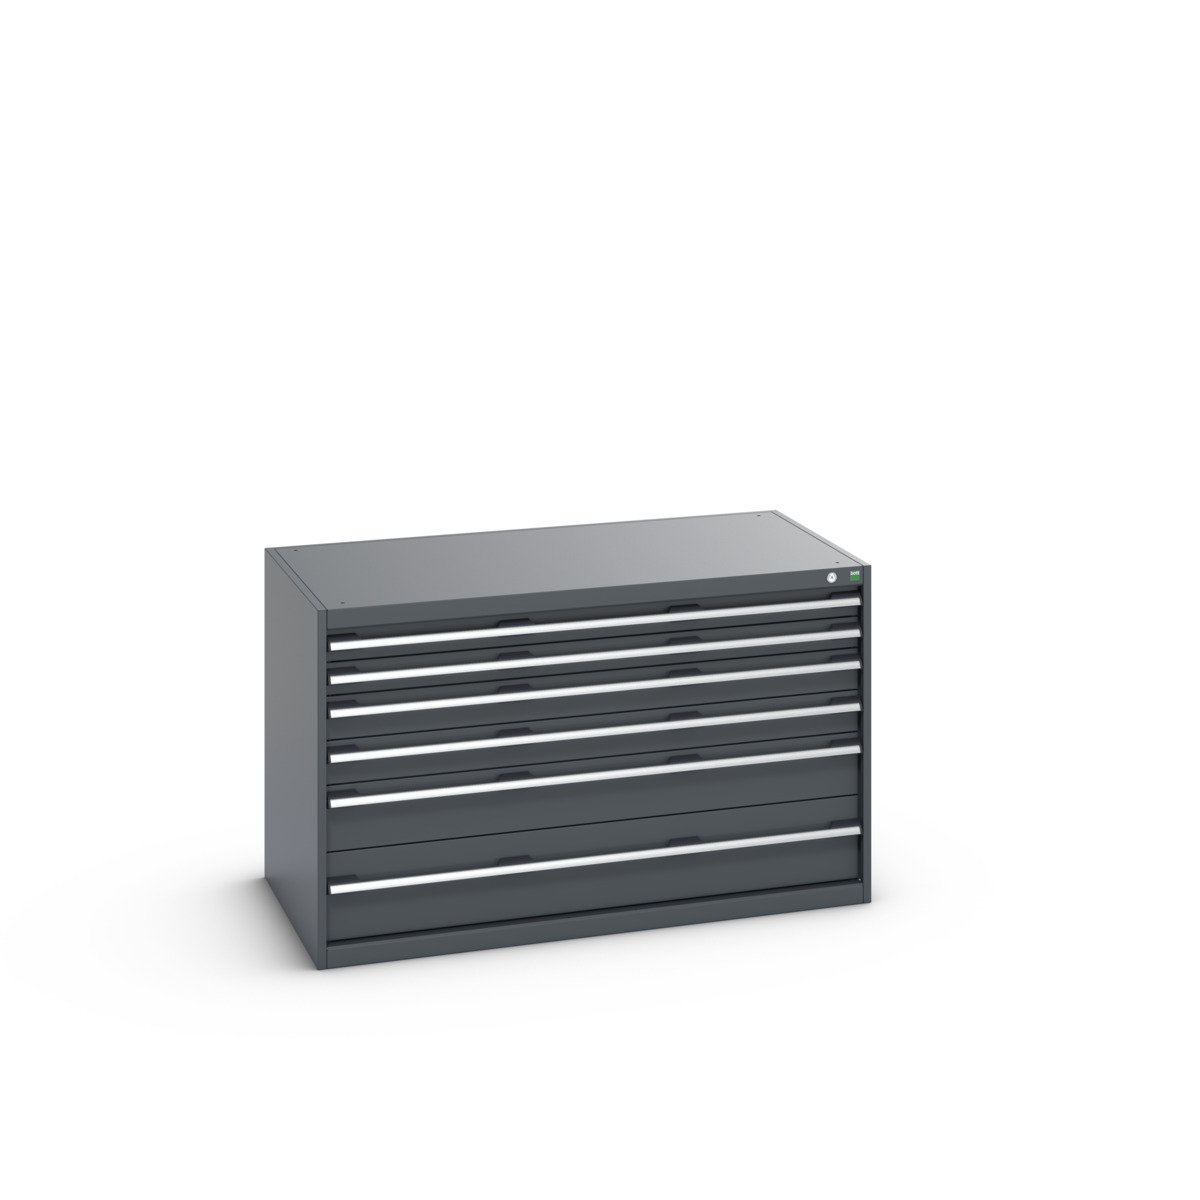 40030072.77V - cubio drawer cabinet